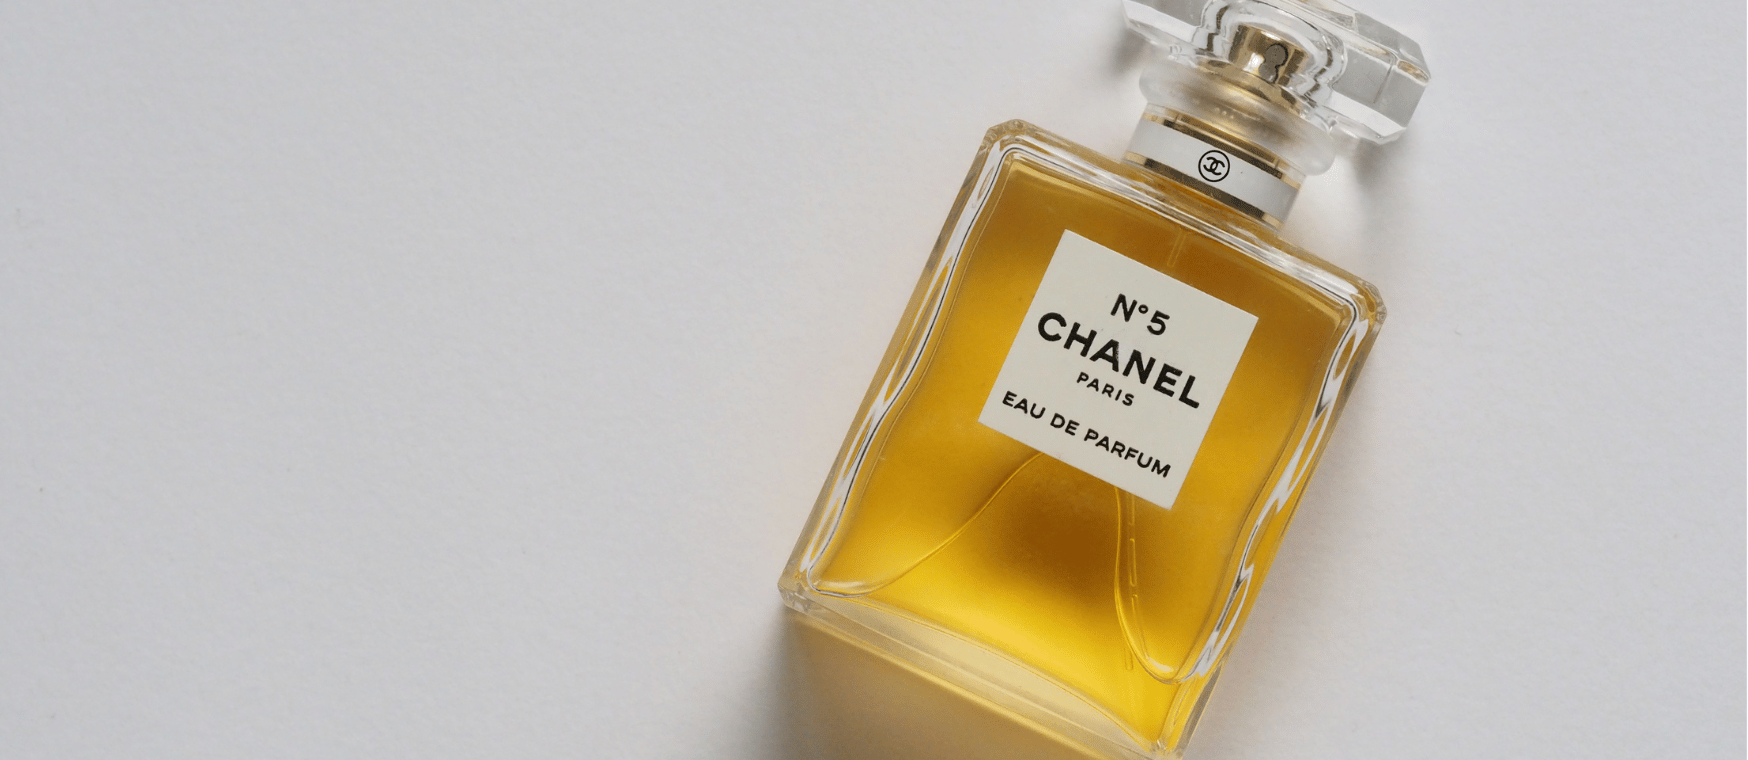 Beste Chanel parfums voor haar